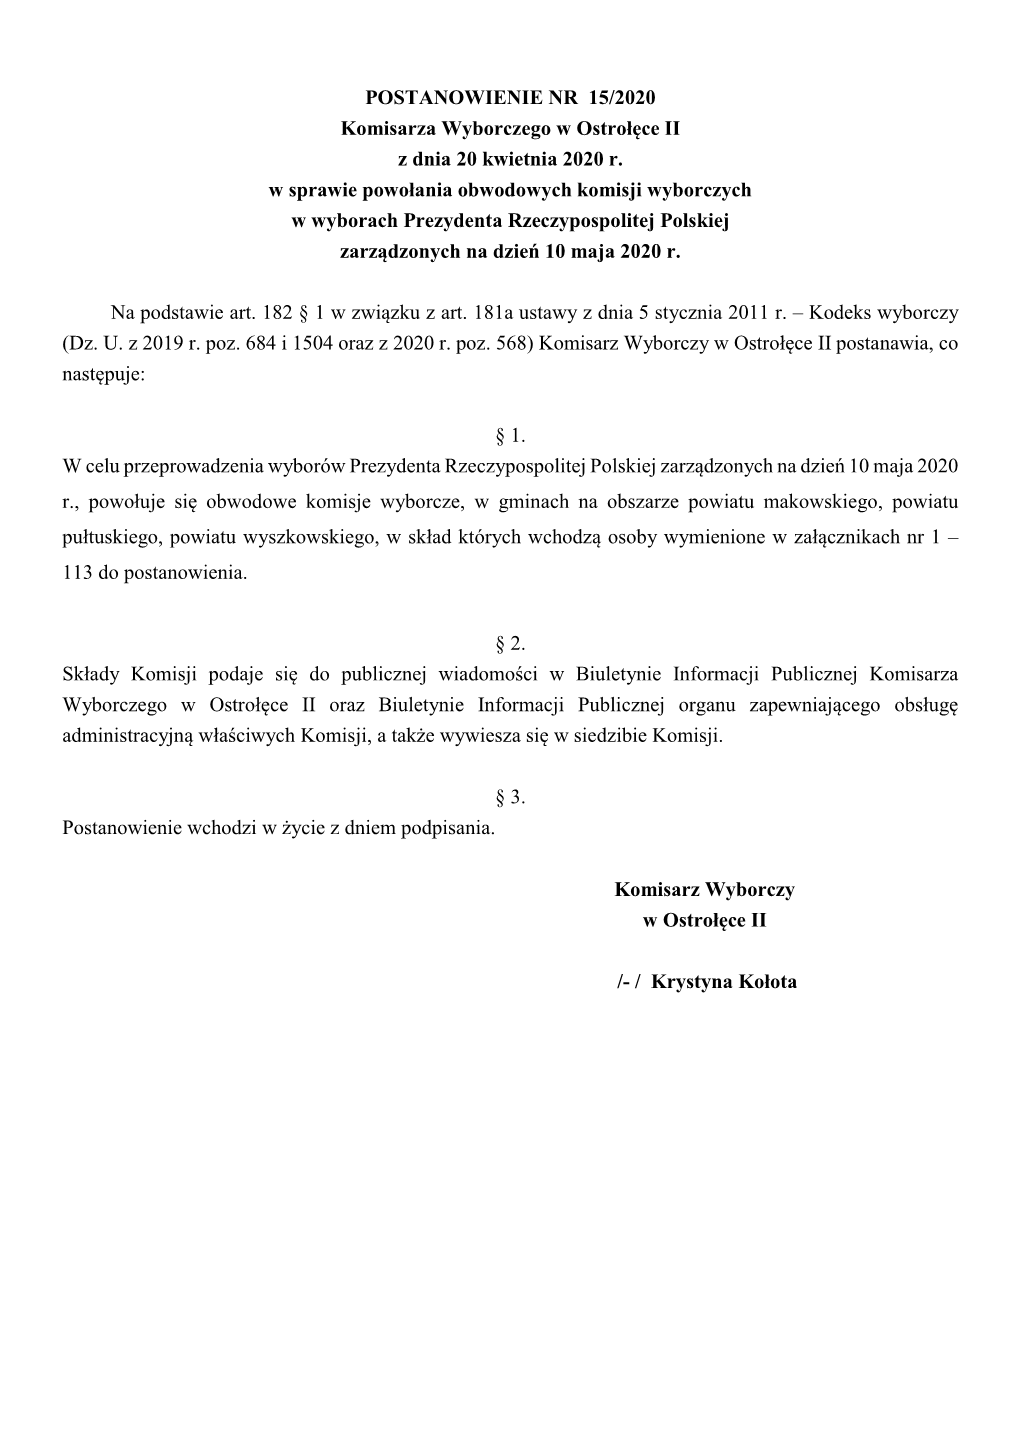 POSTANOWIENIE NR 15/2020 Komisarza Wyborczego W Ostrołęce II Z Dnia 20 Kwietnia 2020 R